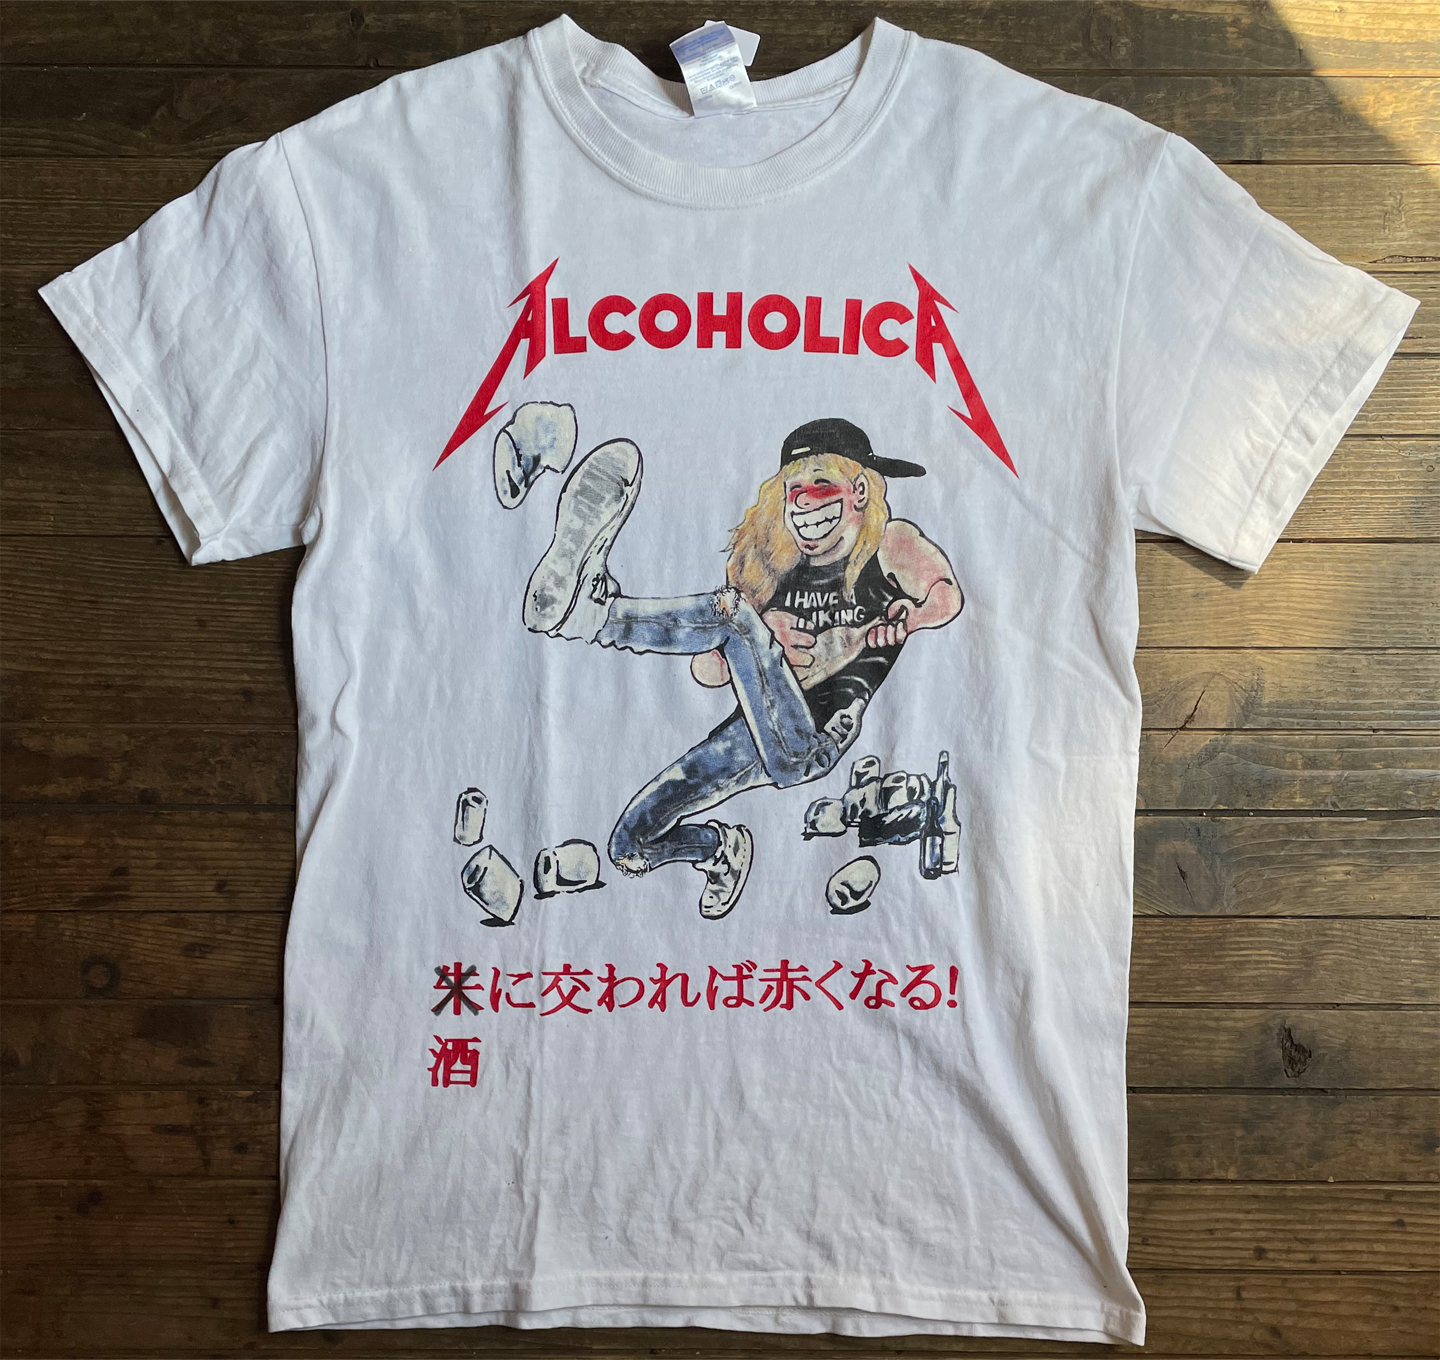 USED! ALCOHOLICA(METALLICA) Tシャツ 朱に交われば赤くなる!